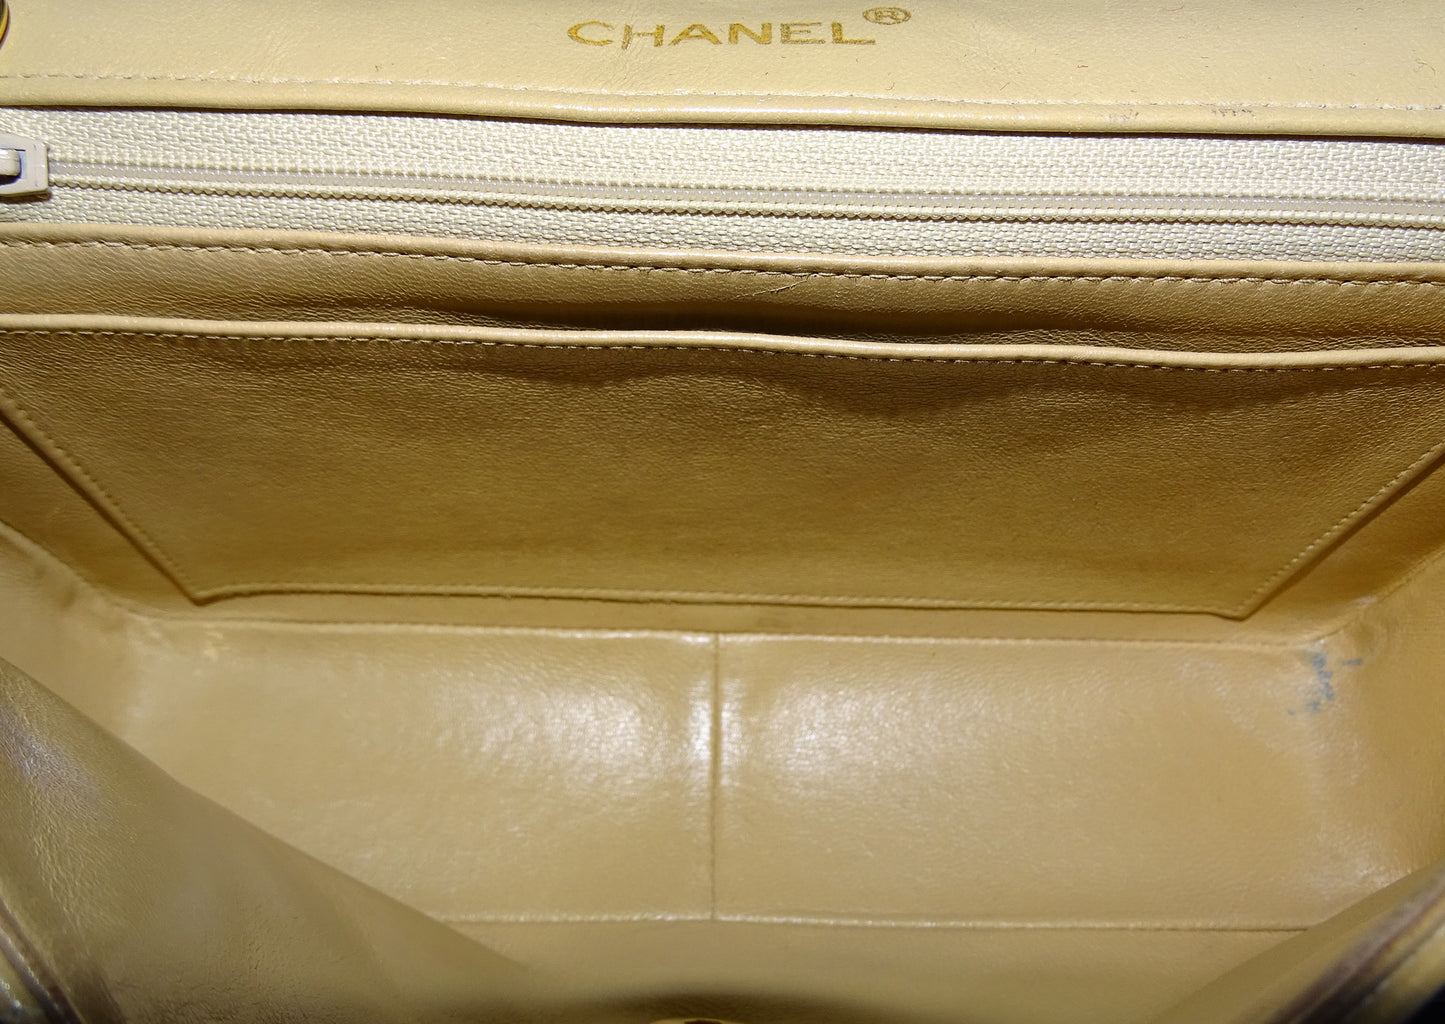 Chanel Vintage Beige Diana Line Flap Bag 1989/91